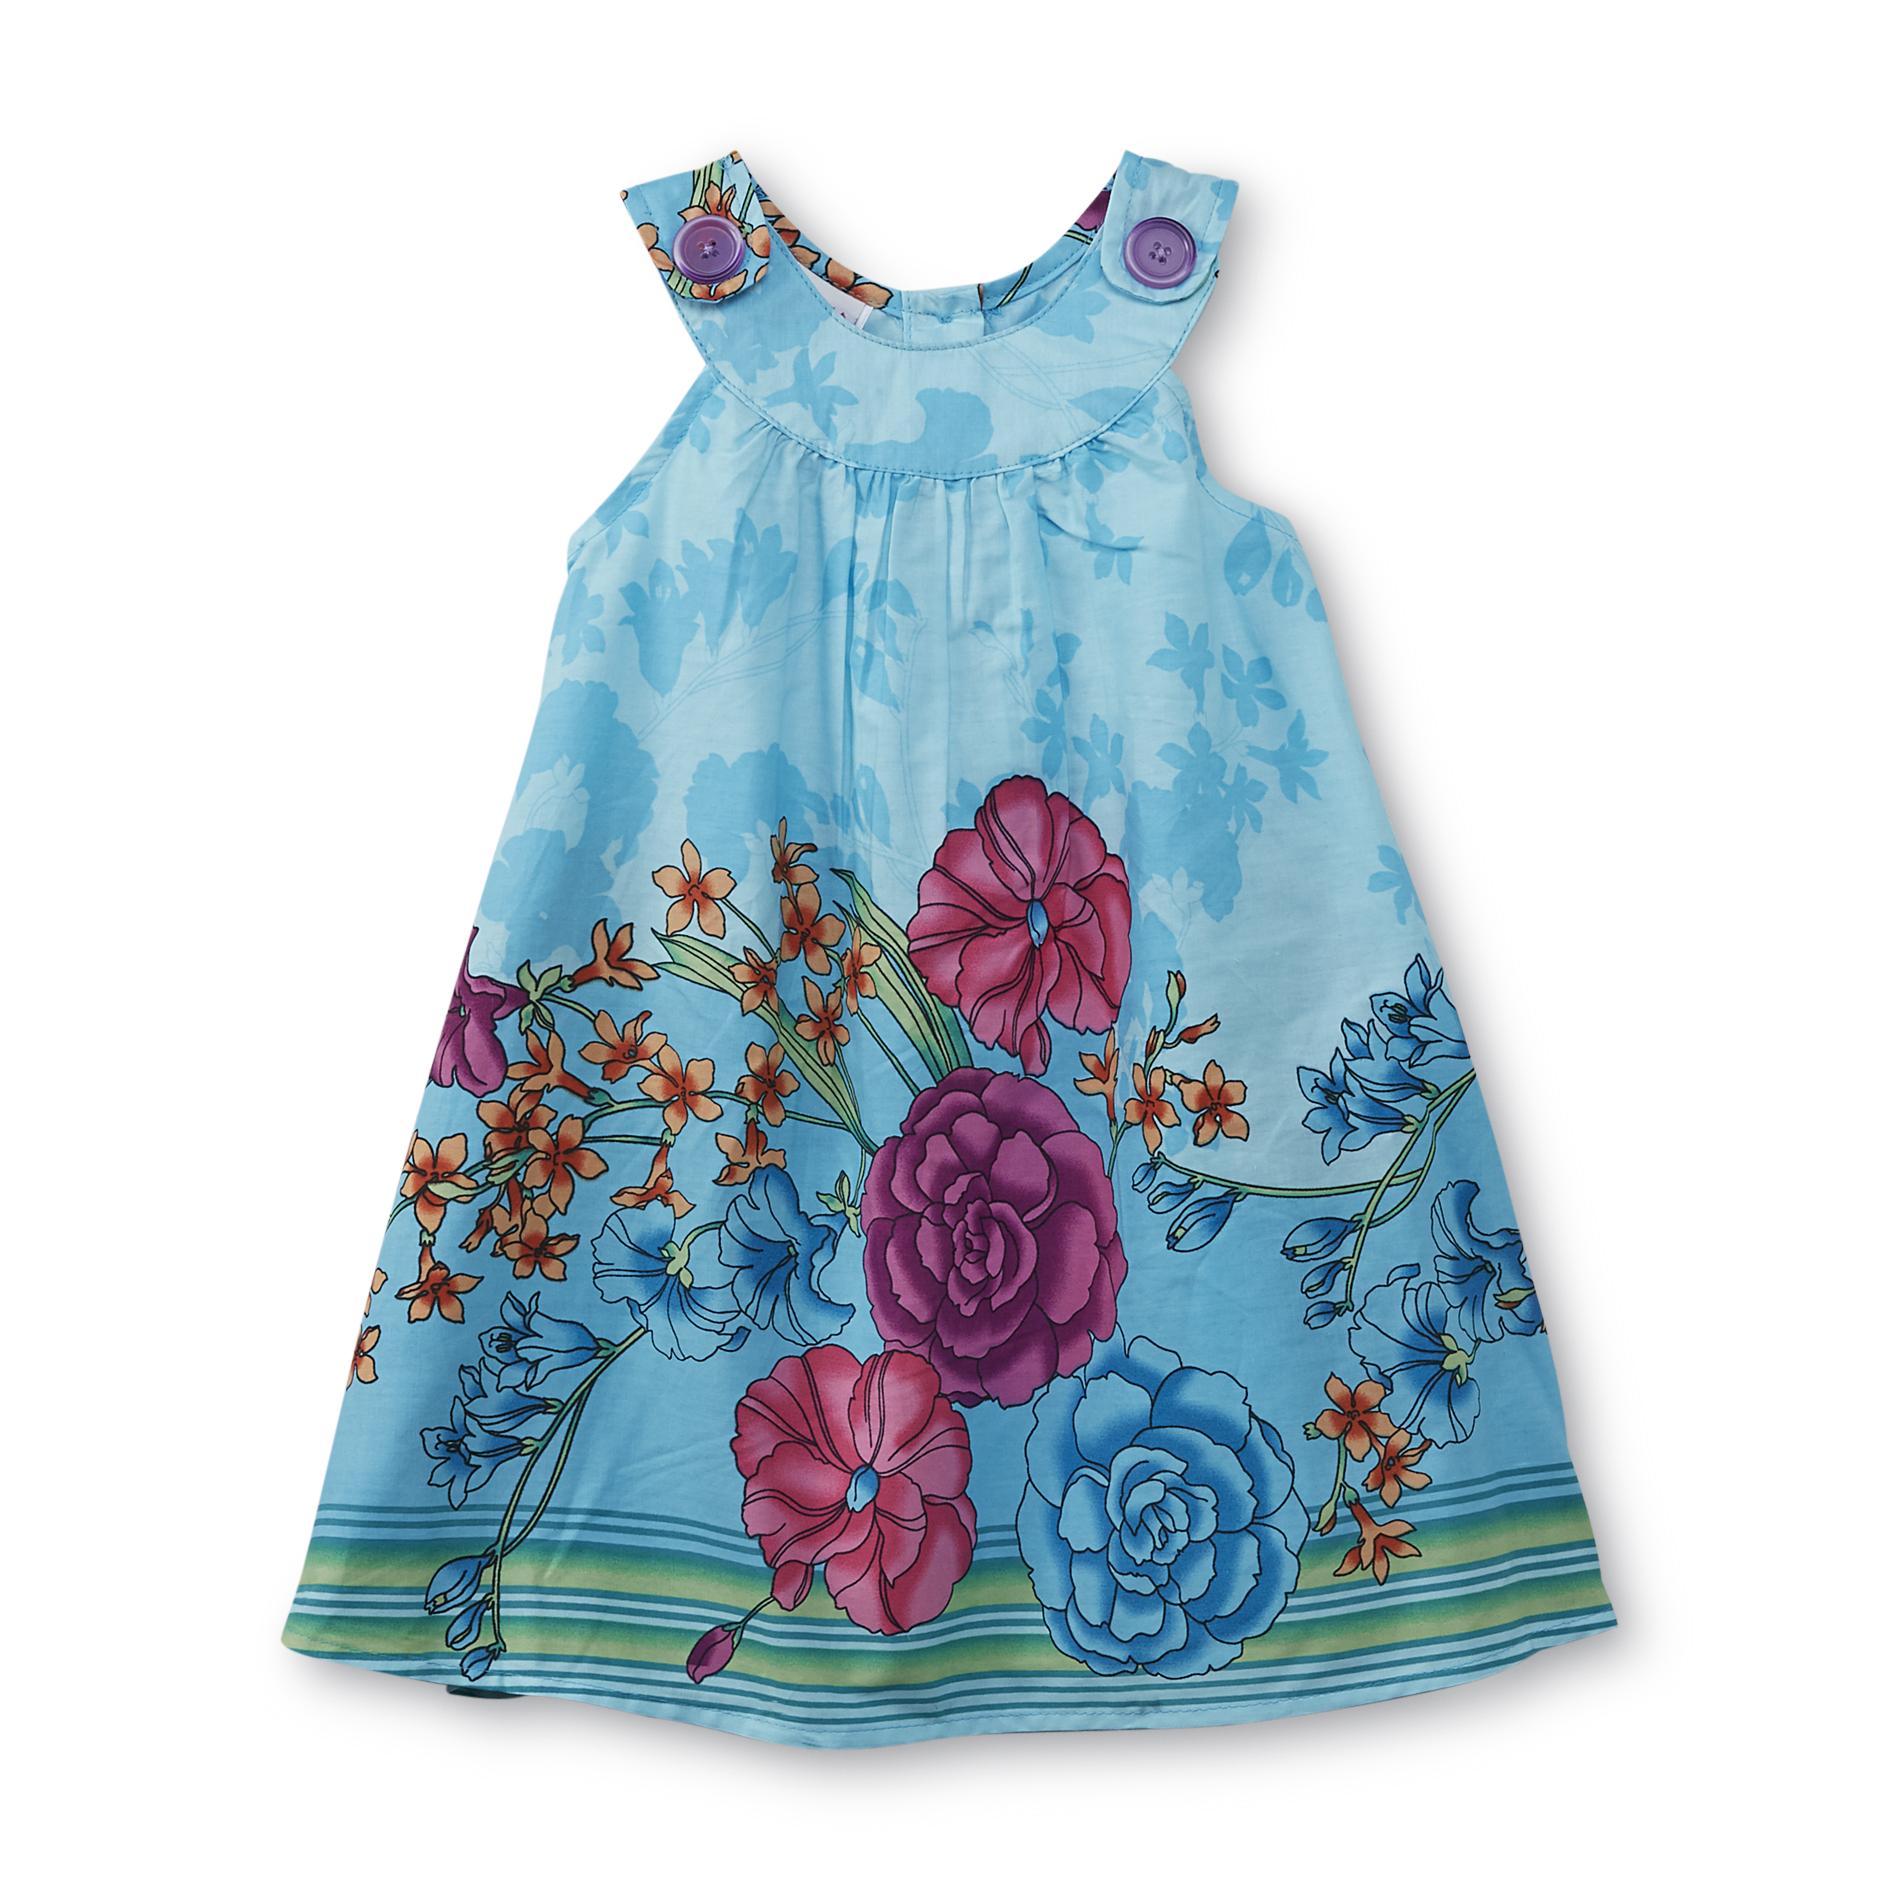 WonderKids Infant & Toddler Girl's Sleeveless Dress - Floral